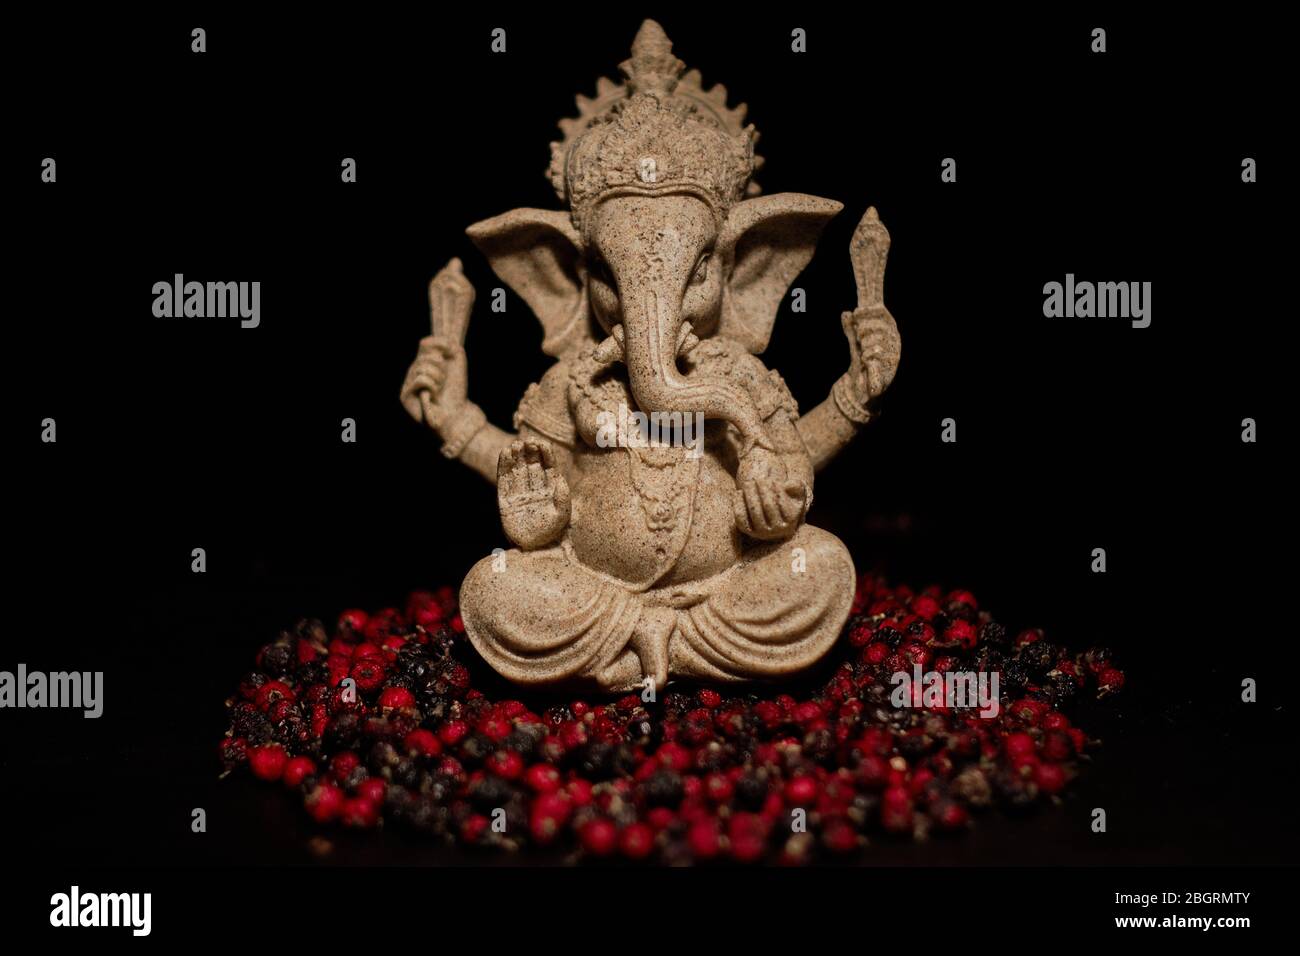 Imagen que representa a una deidad India, ganesha sentado en un puñado de semillas de acebo Foto de stock